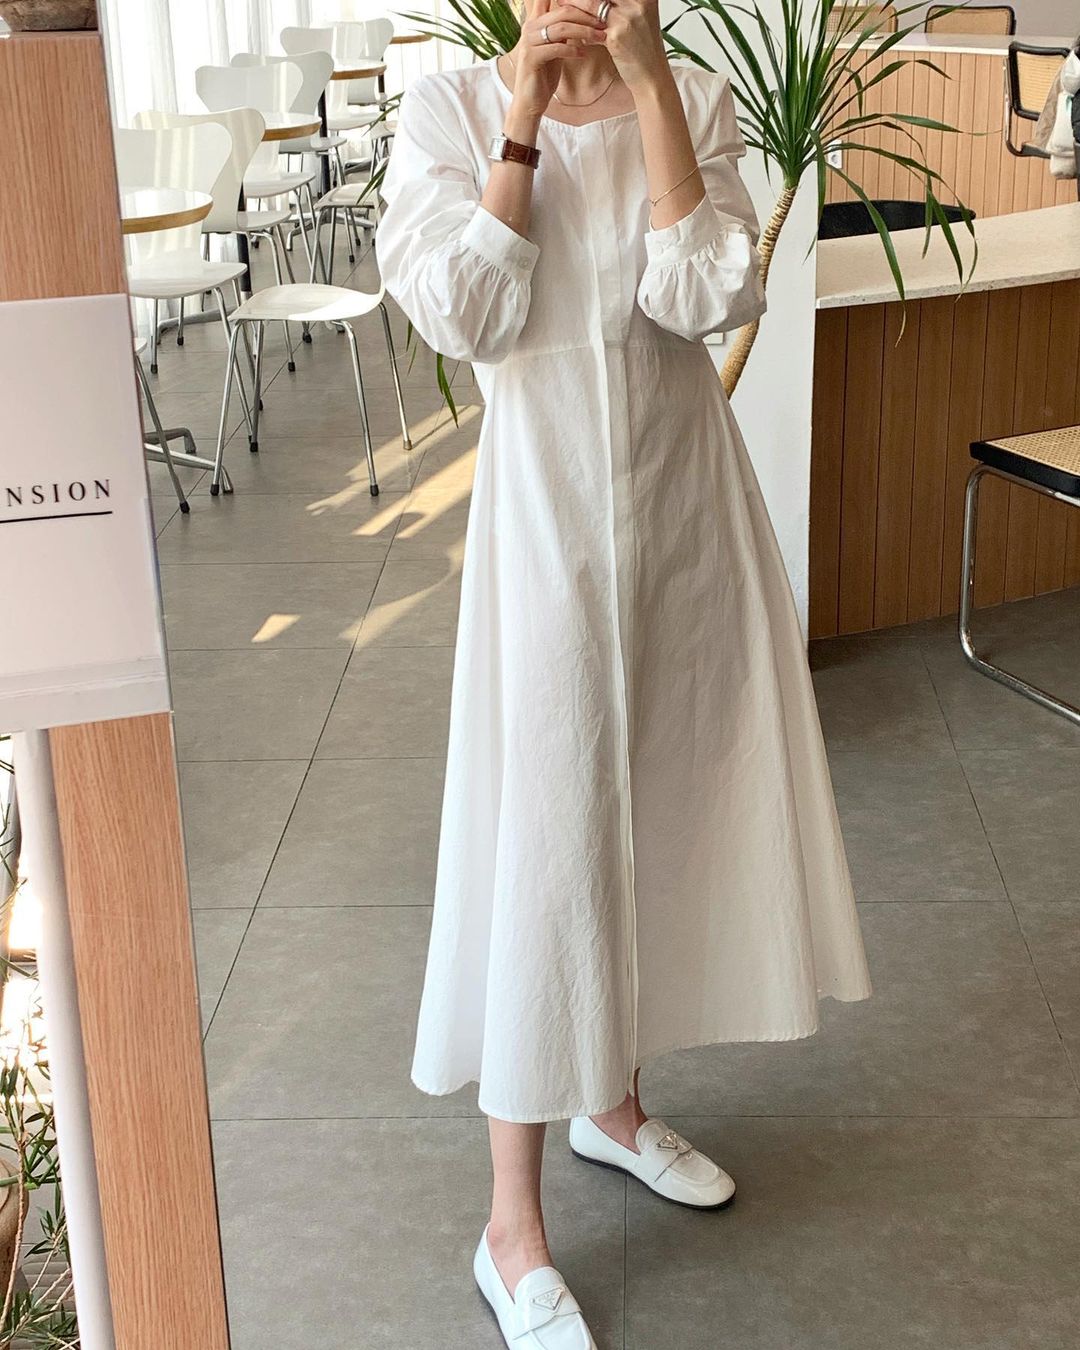 Hè đến là gái Hàn lại diện đủ kiểu váy trắng siêu trẻ xinh và tinh tế, xem mà muốn sắm cả 'lố' về nhà - Ảnh 11